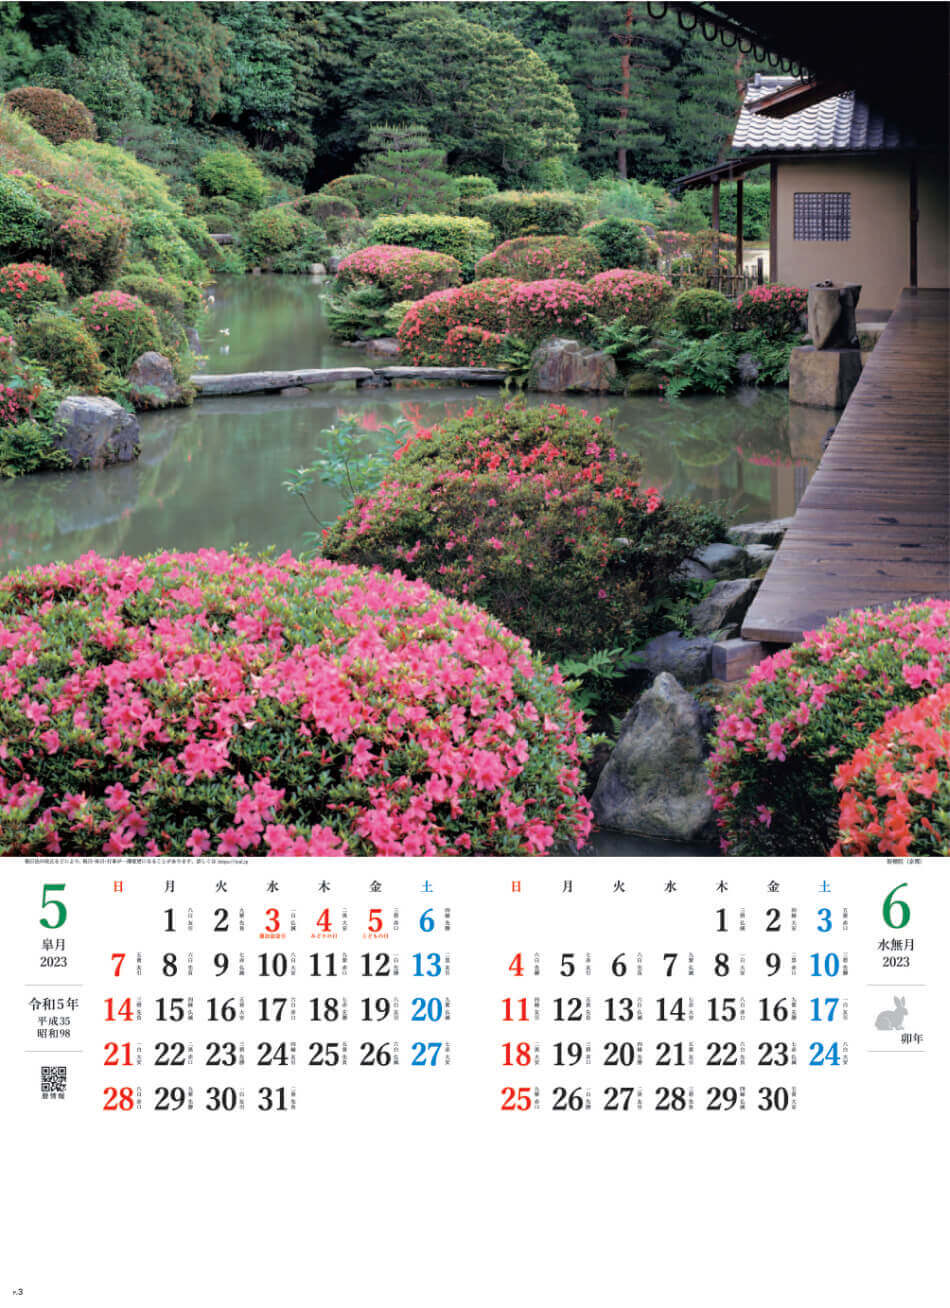 5/6月 智積院(京都) 庭の心 2023年カレンダーの画像